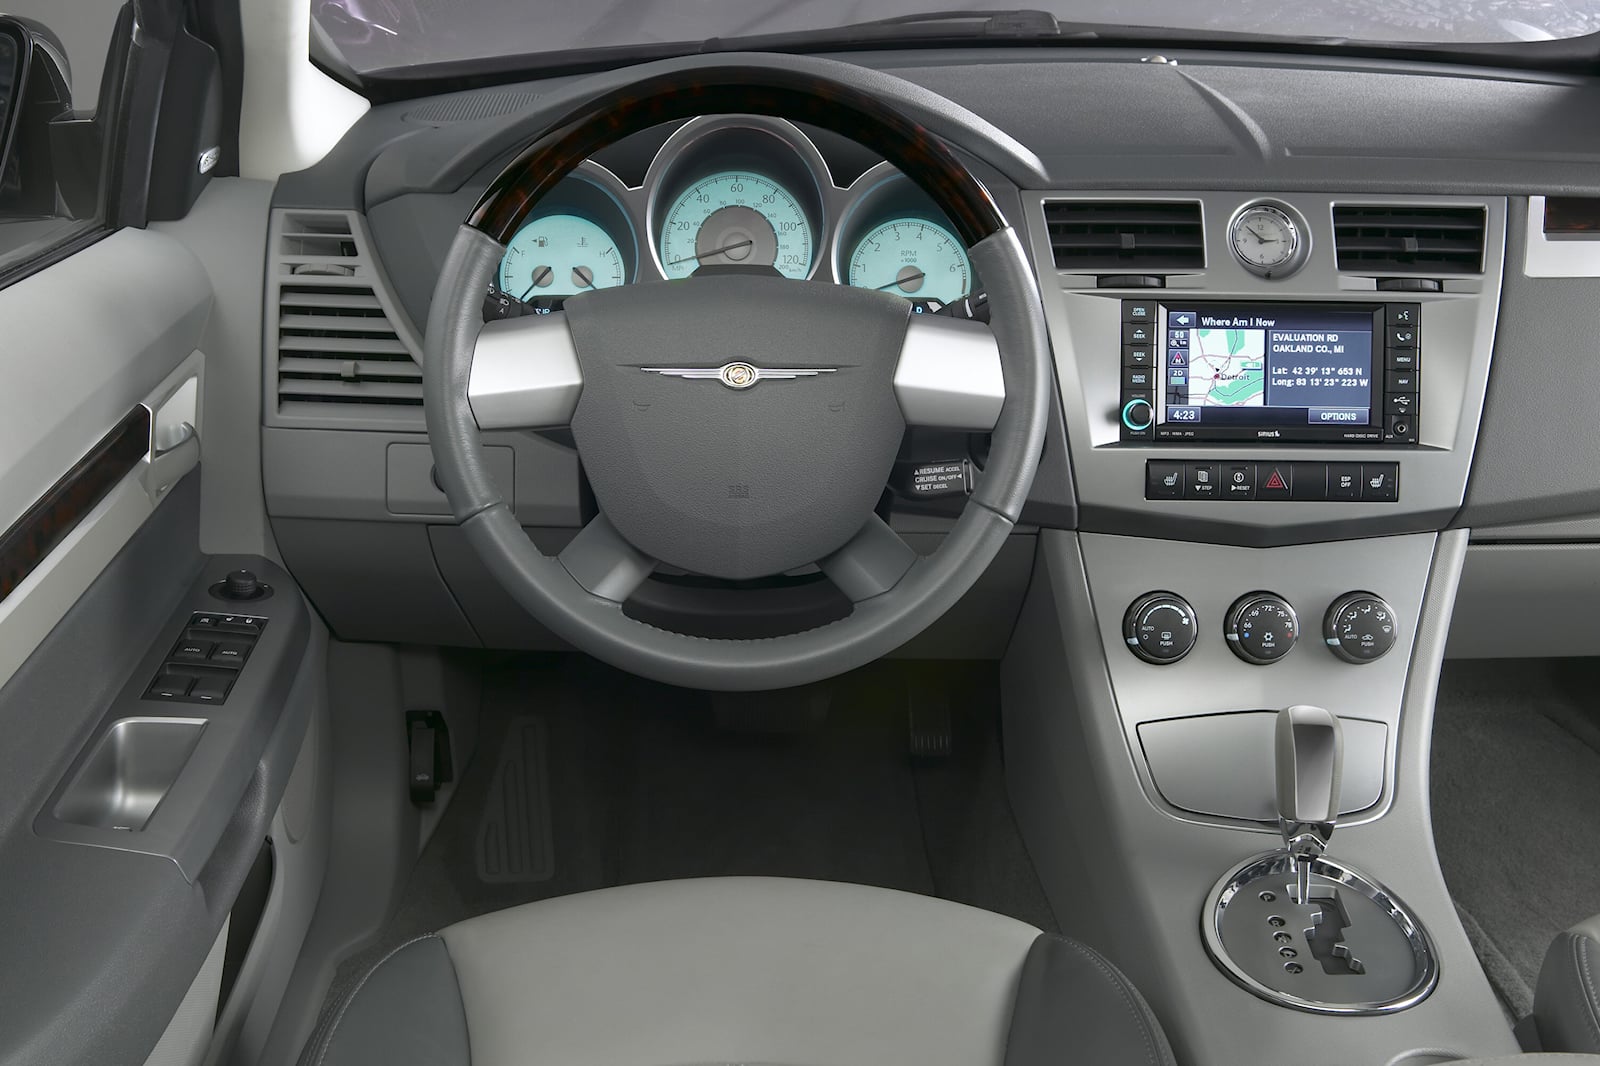 2010 Chrysler Sebring Sedan Interior Photos | CarBuzz